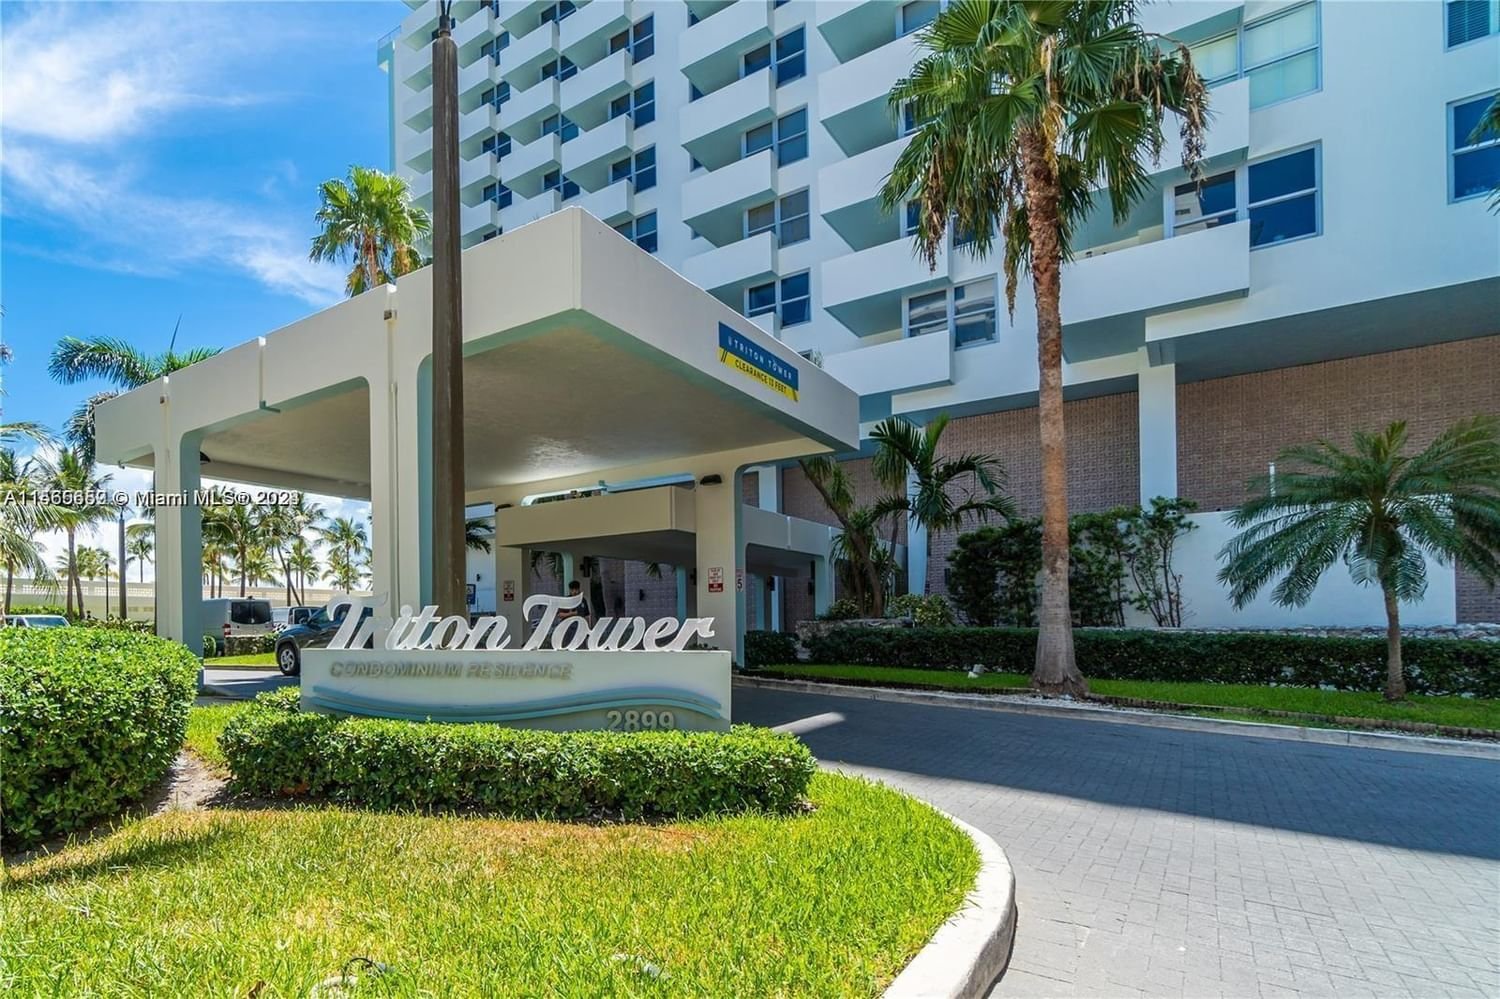 Real estate property located at 2899 Collins Ave #550, Miami-Dade County, TRITON TOWER CONDO, Miami Beach, FL